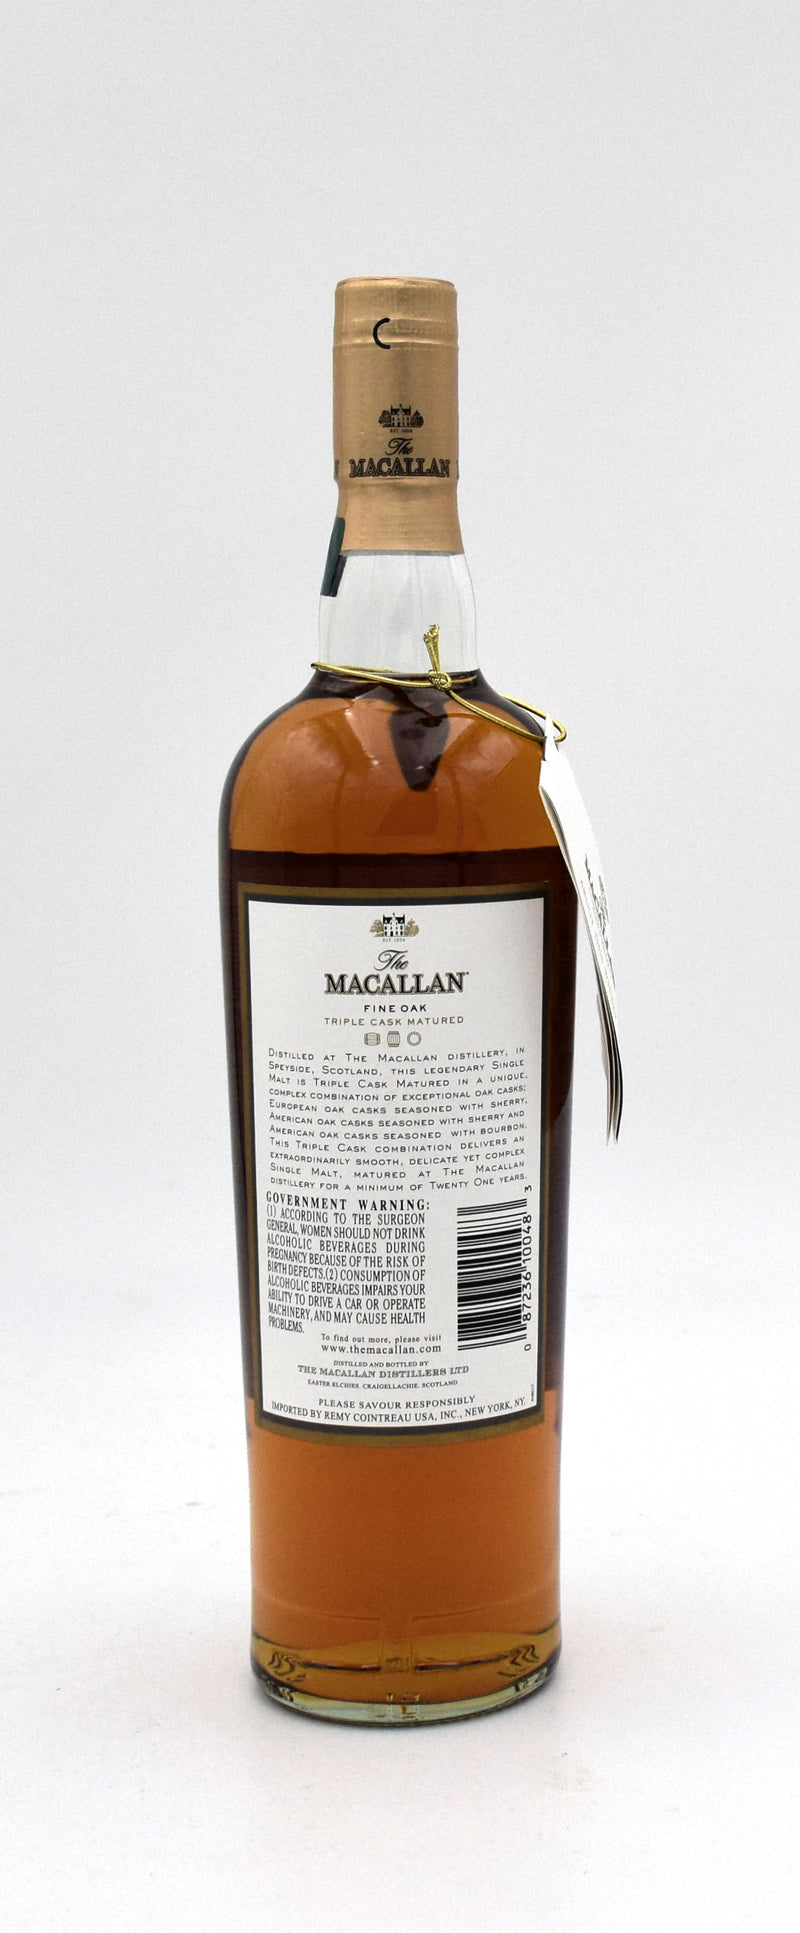 Macallan 21 Year Old Fine Oak Triple Cask Scotch Whisky (2000's vintage)